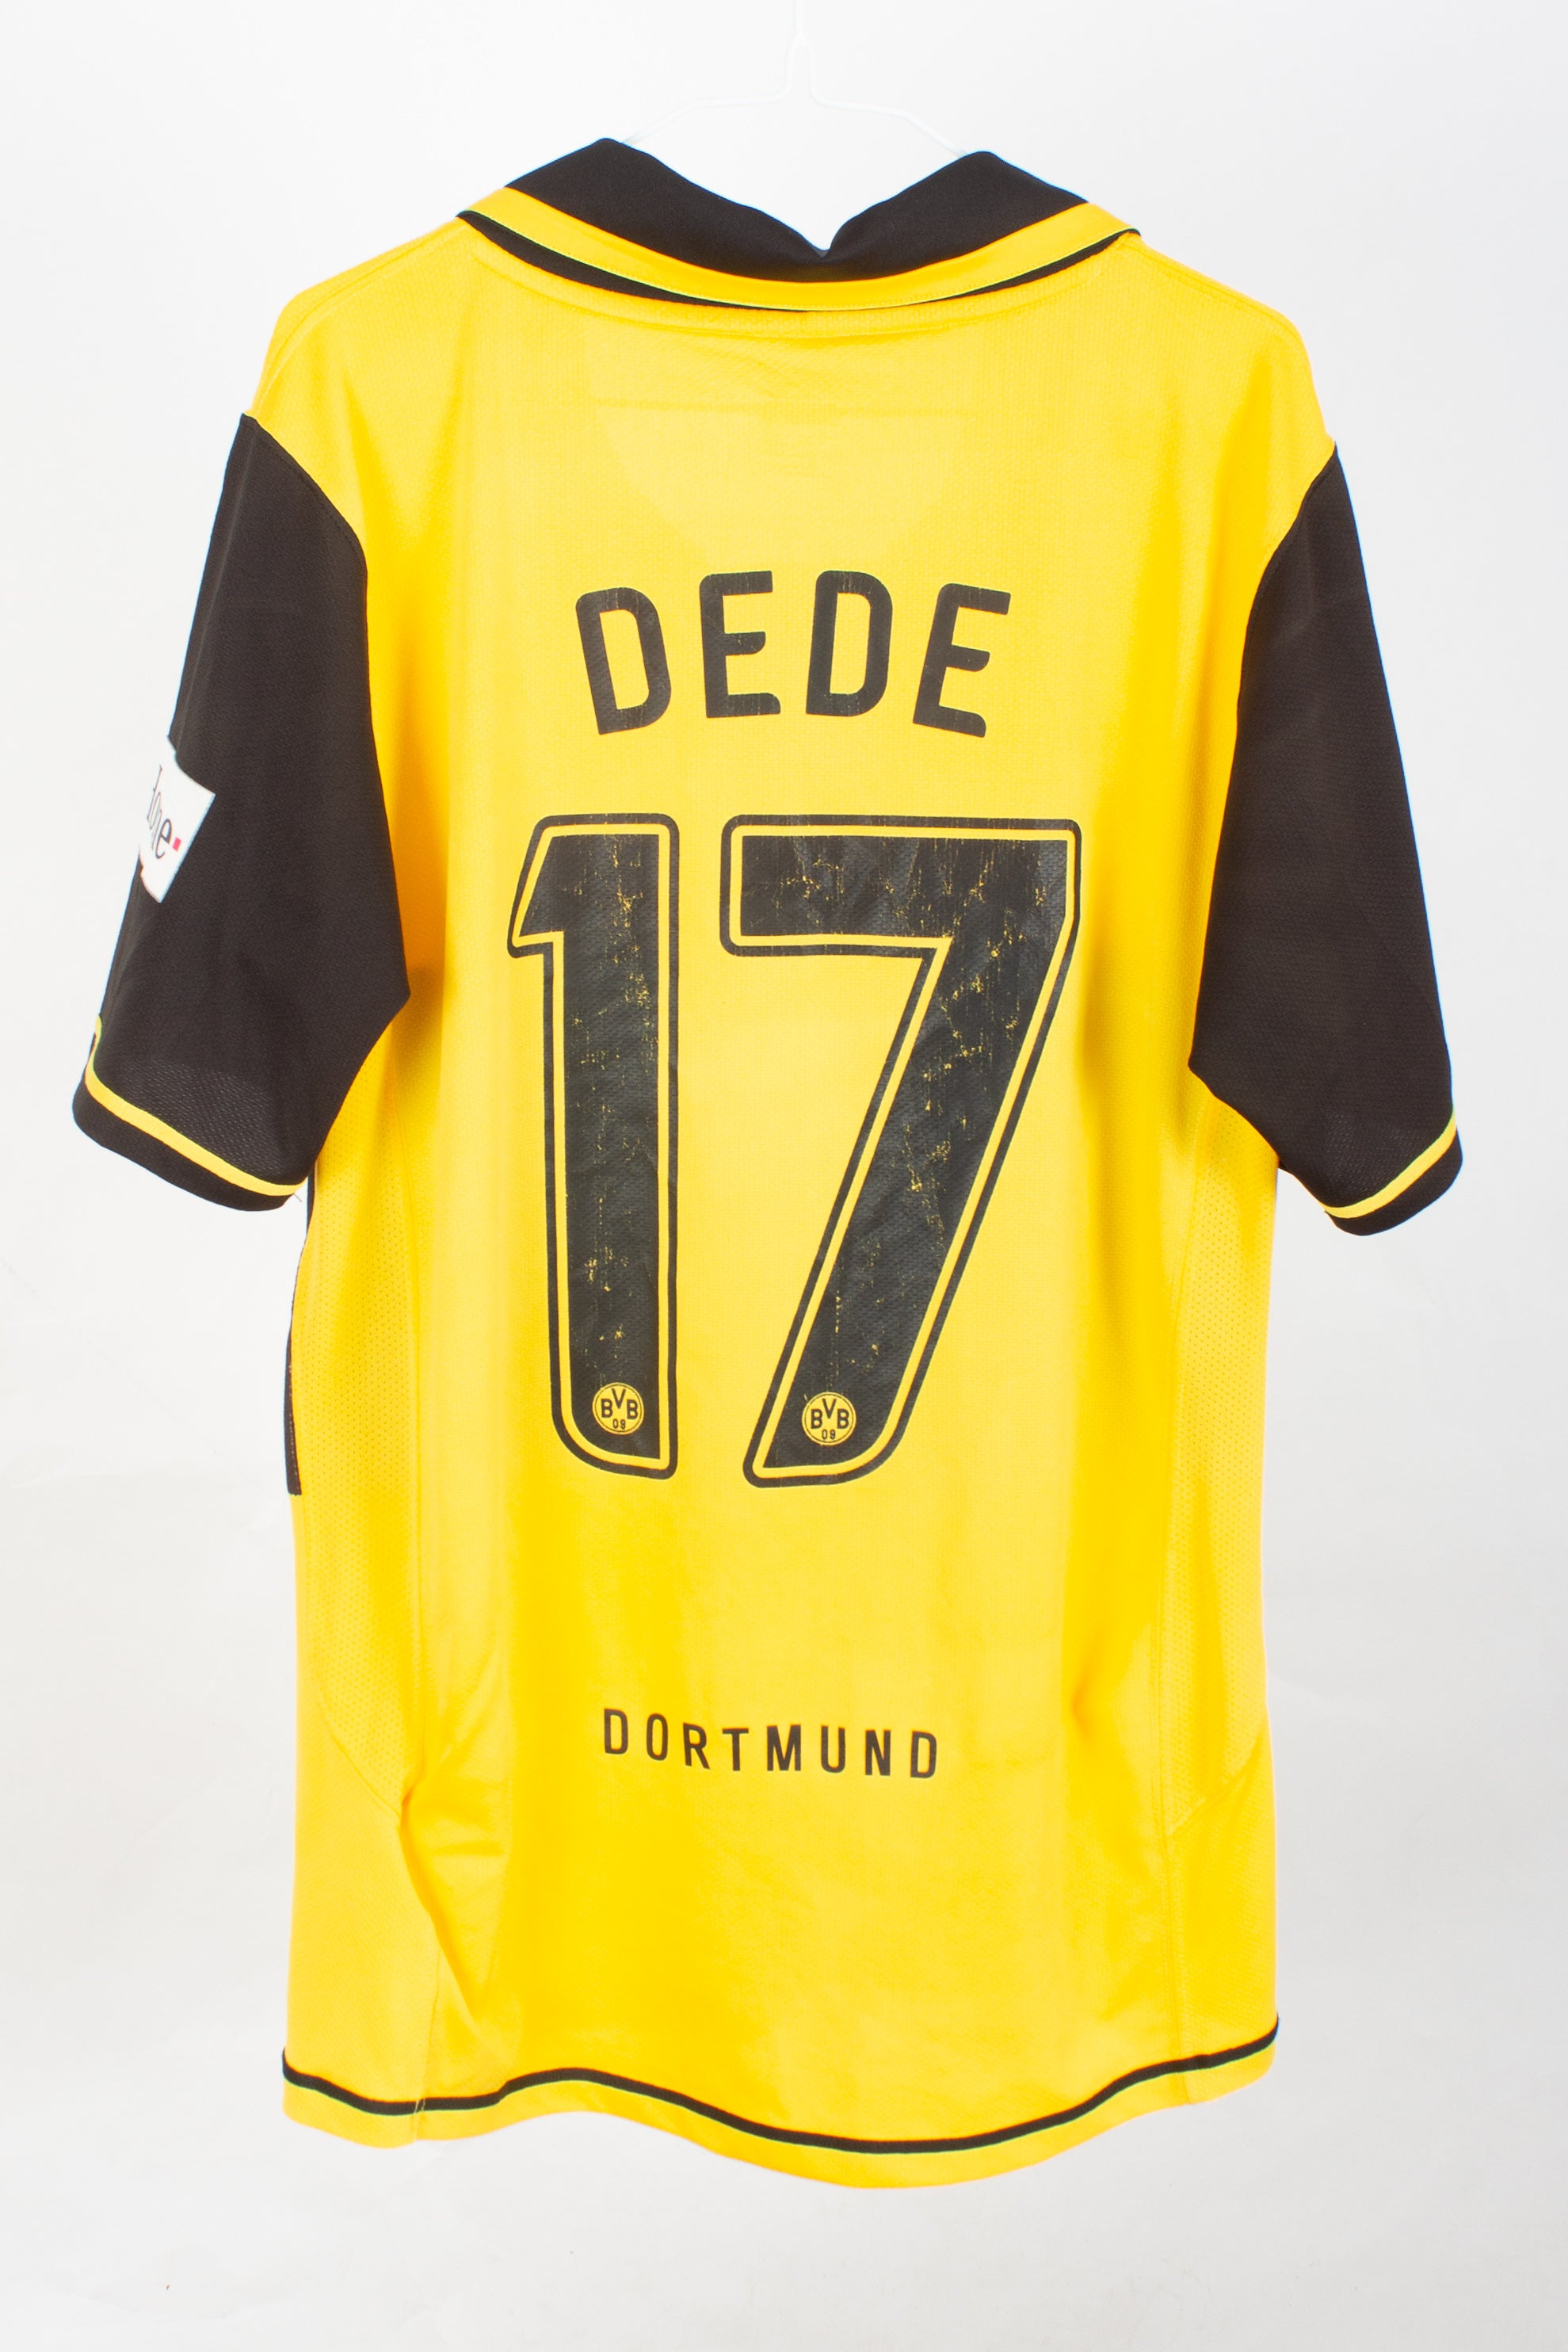 Borussia Dortmund 2007/08 Home Shirt (dede #17)